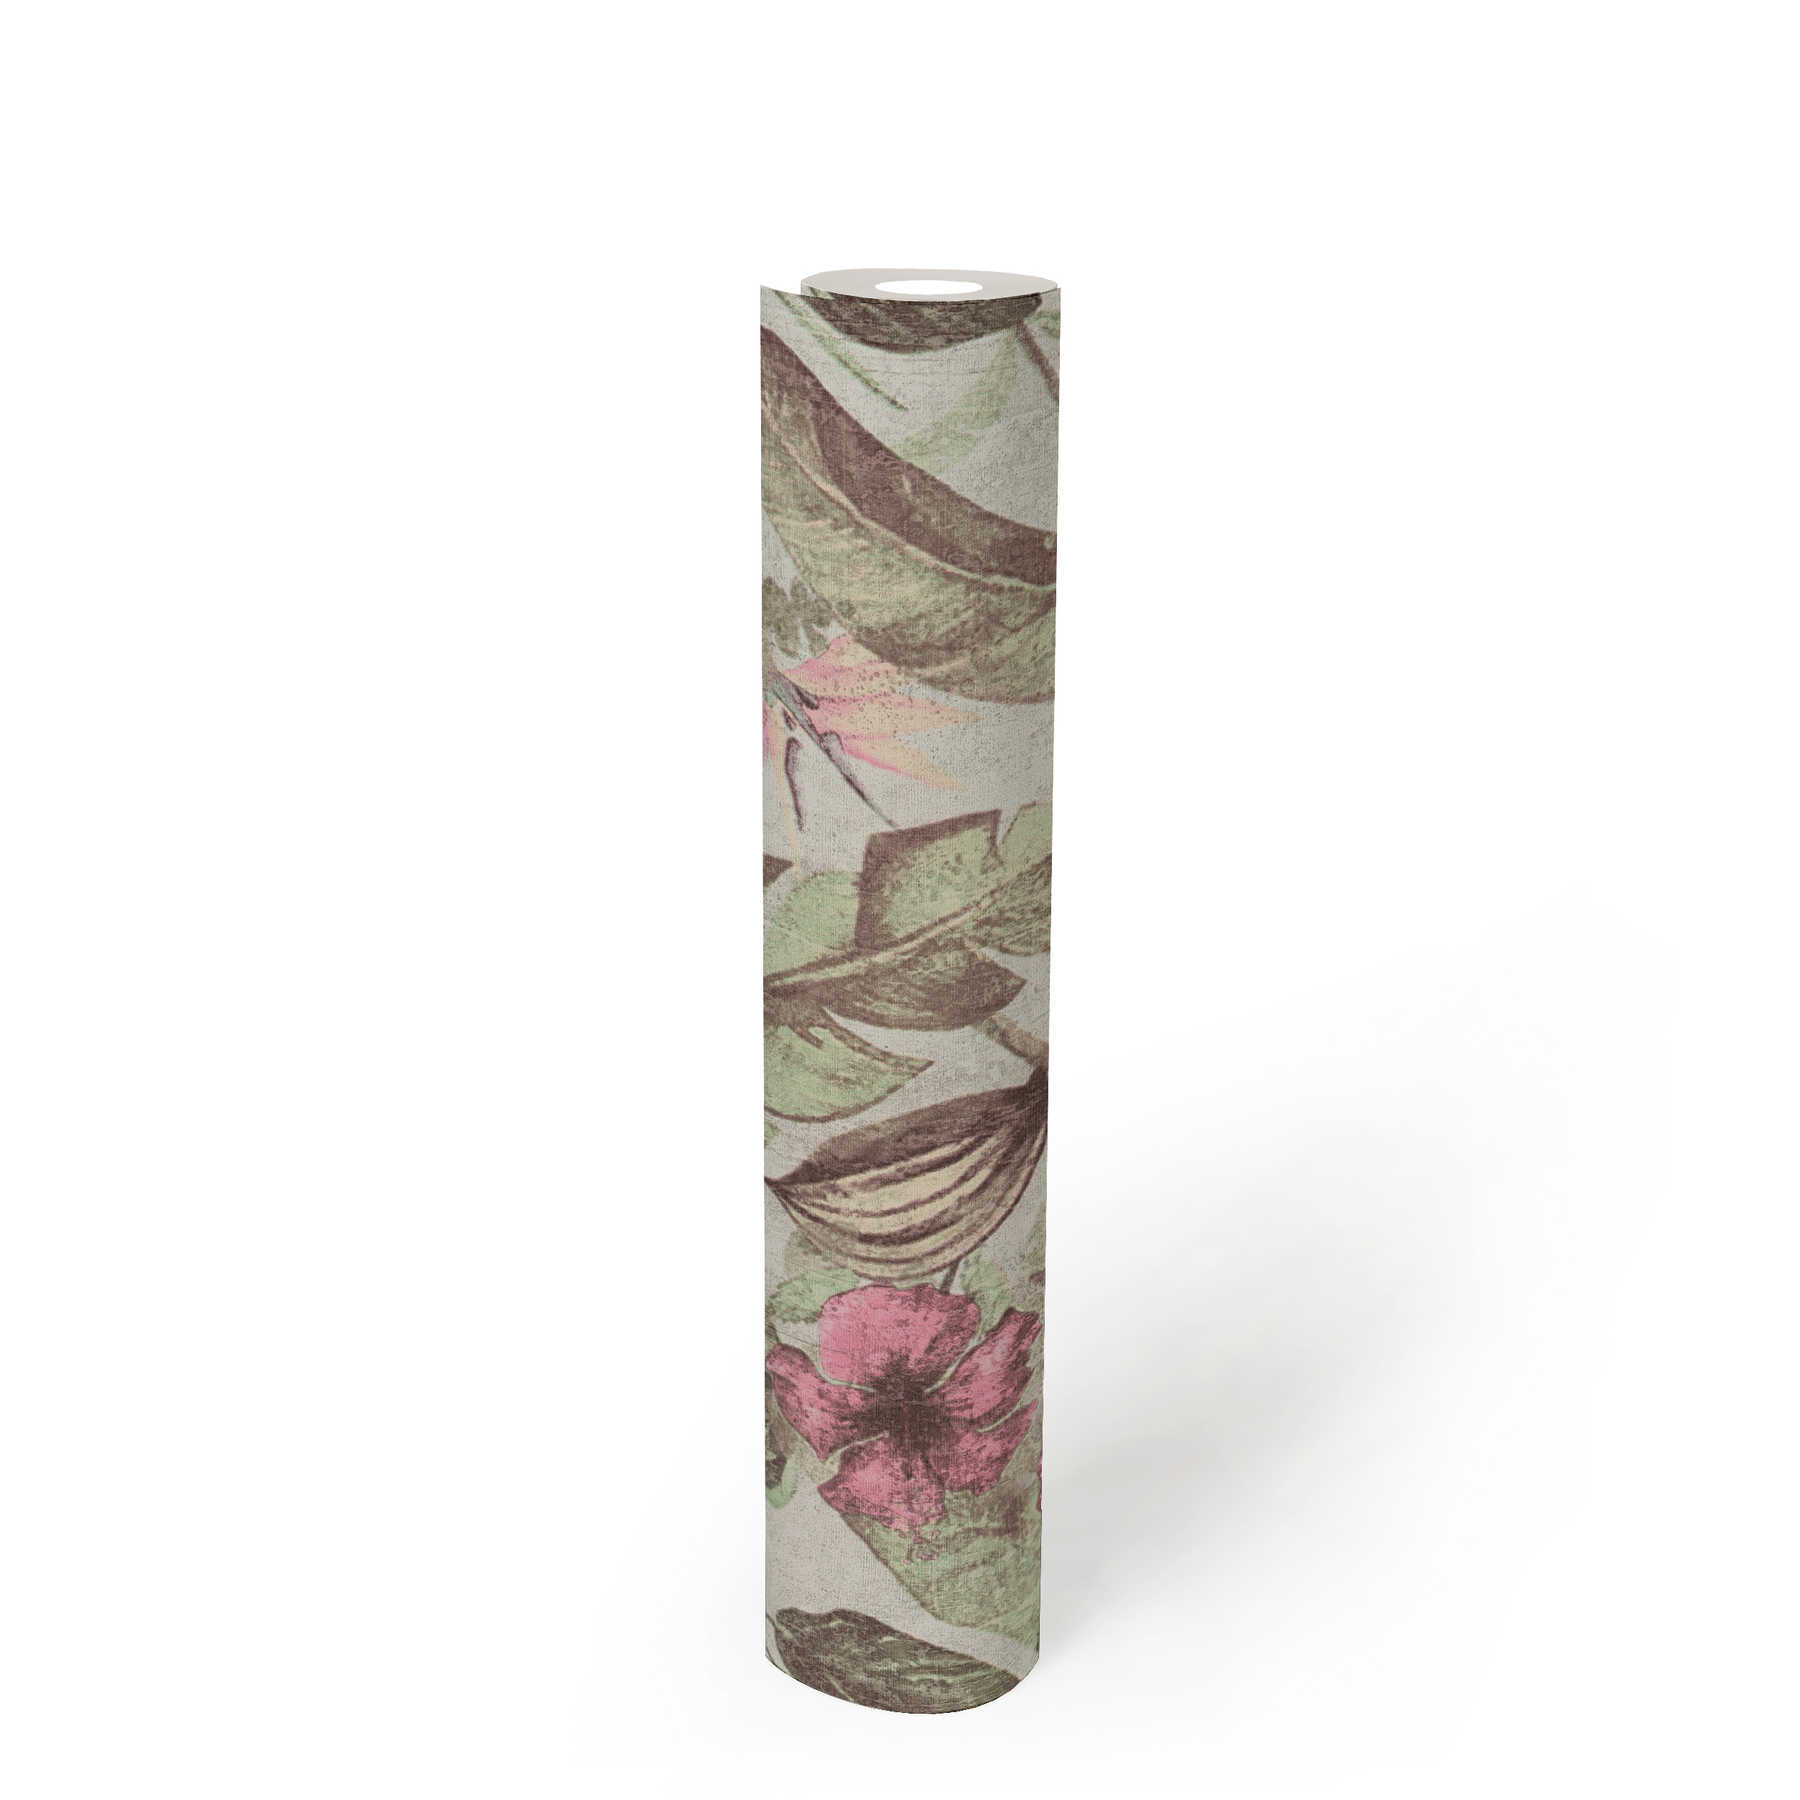             Papier peint motif floral, style tropical & aspect textile - rose, vert, marron
        